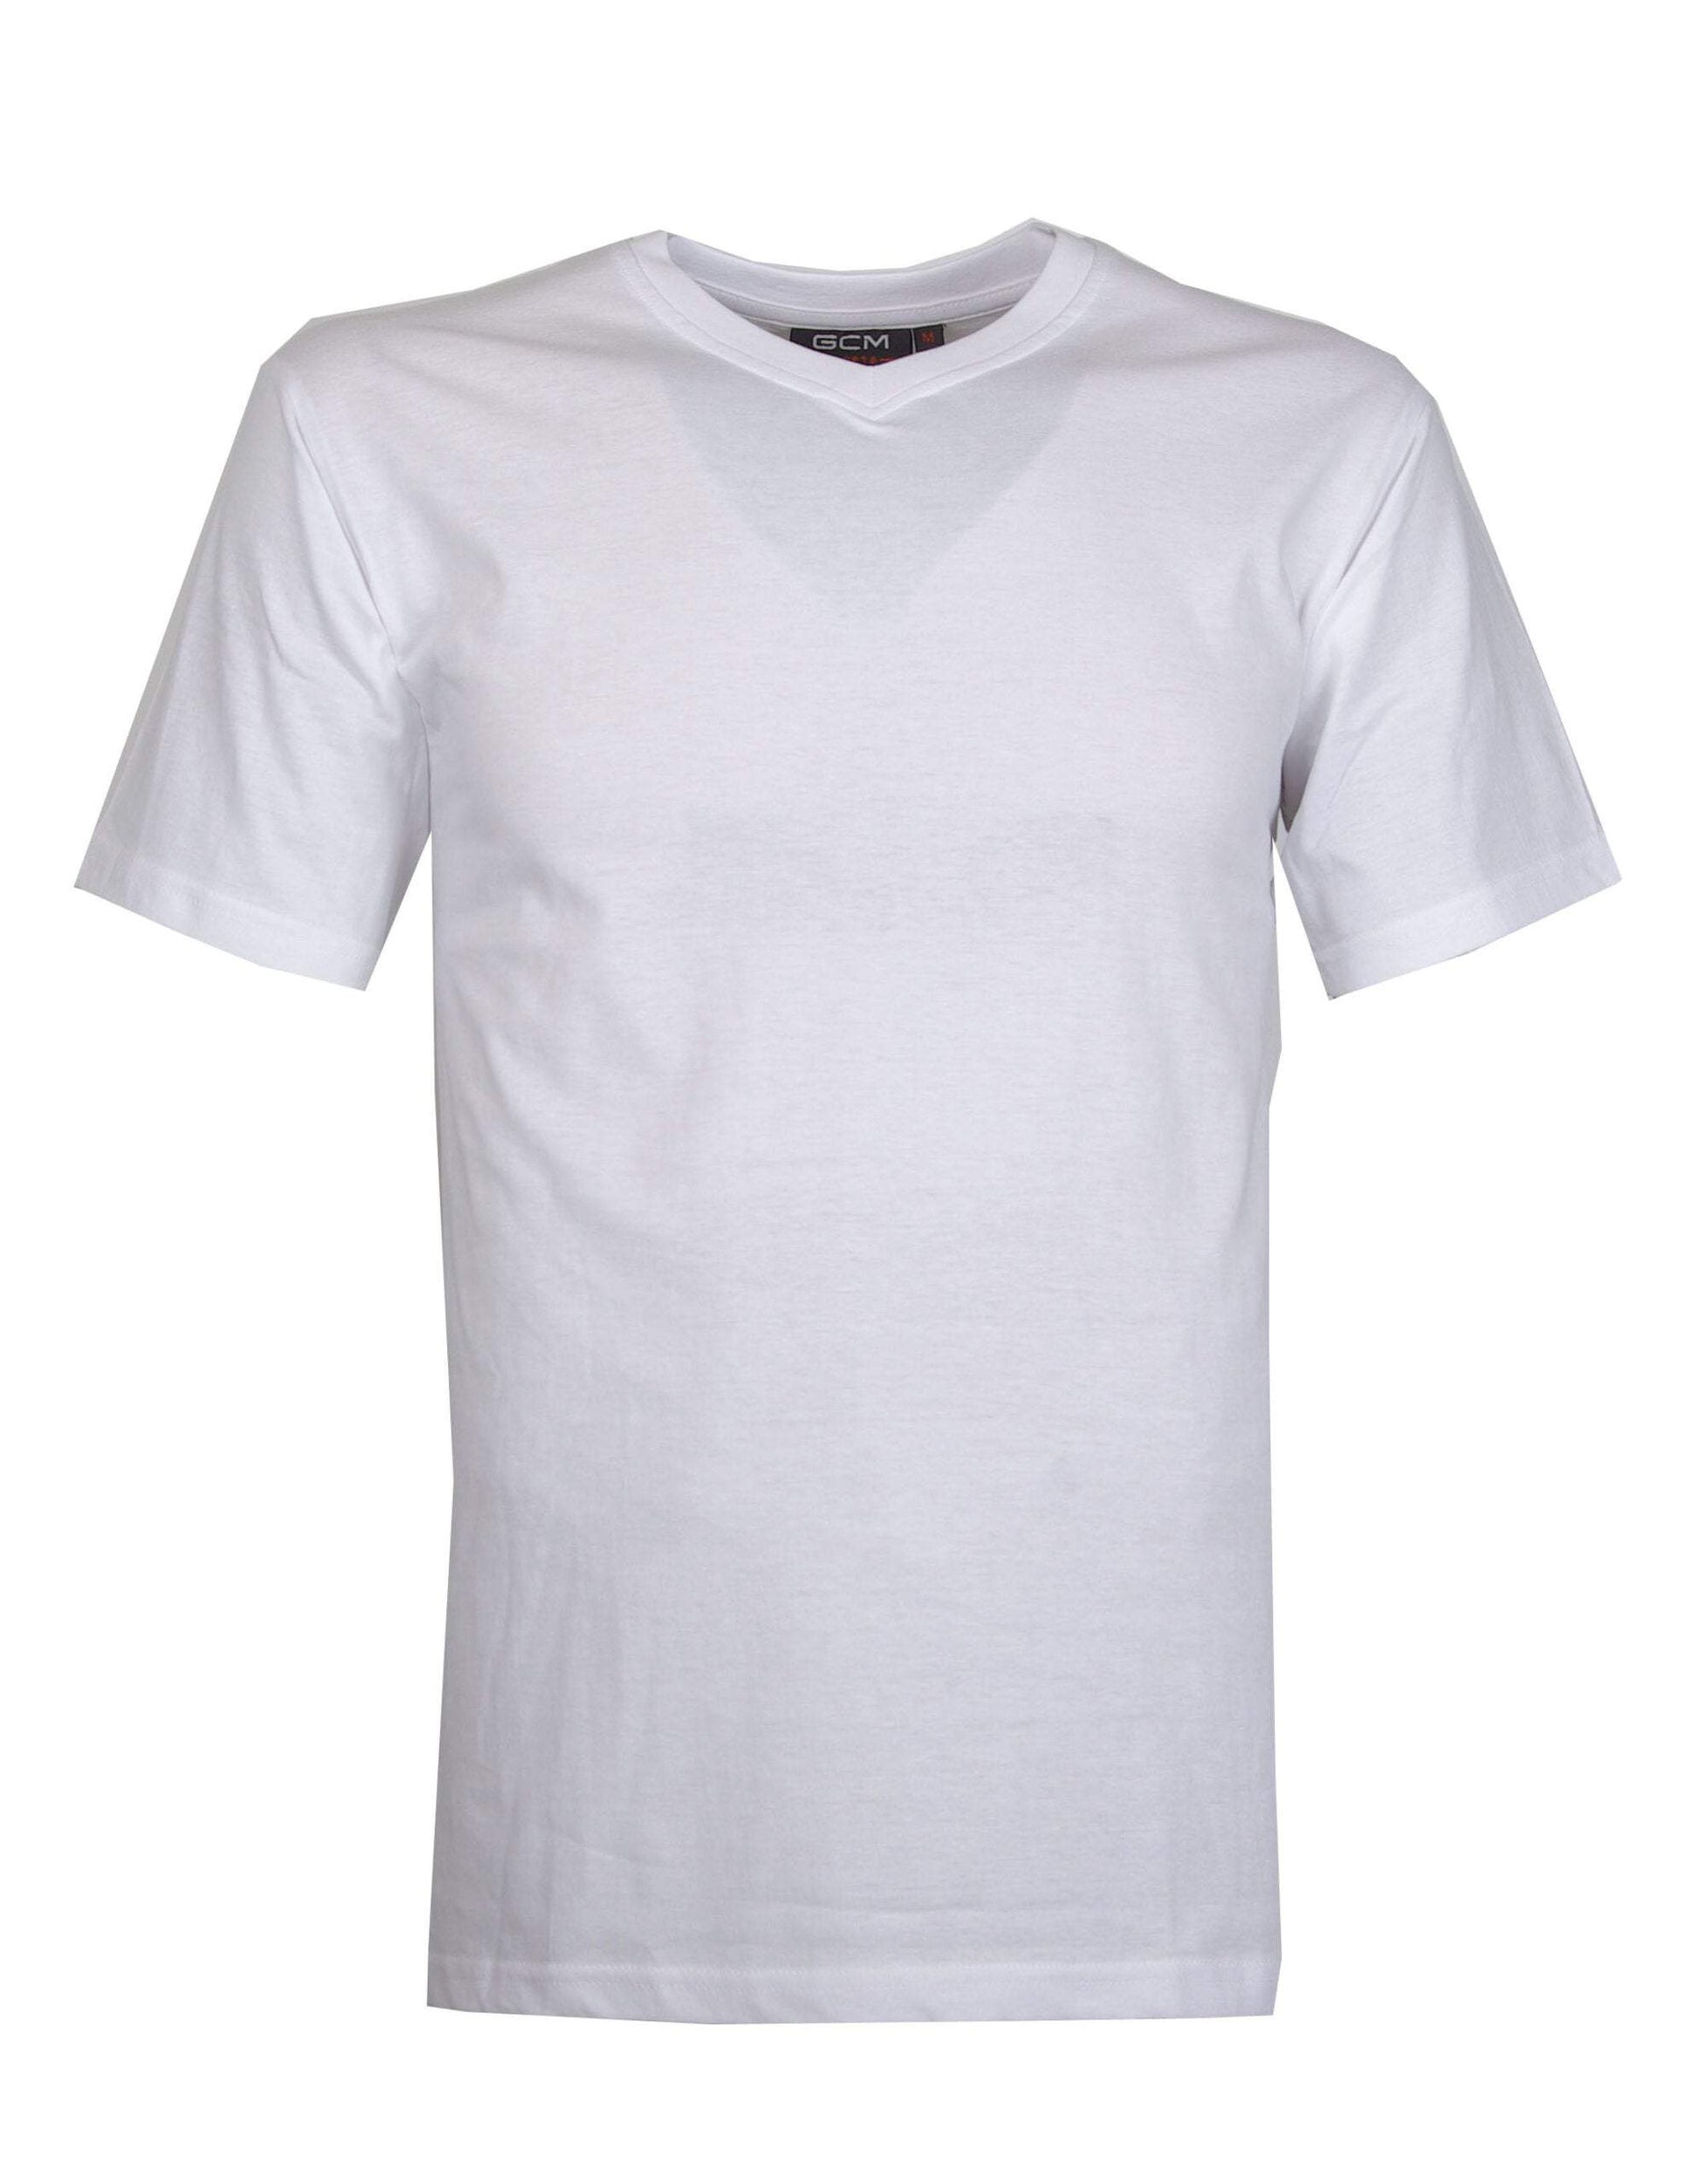 GCM original t-shirt V-hals wit-Broeken Binkie-Grote maten,grote maten kleding,Grote Maten tops,grote tops,Shirts,V hals